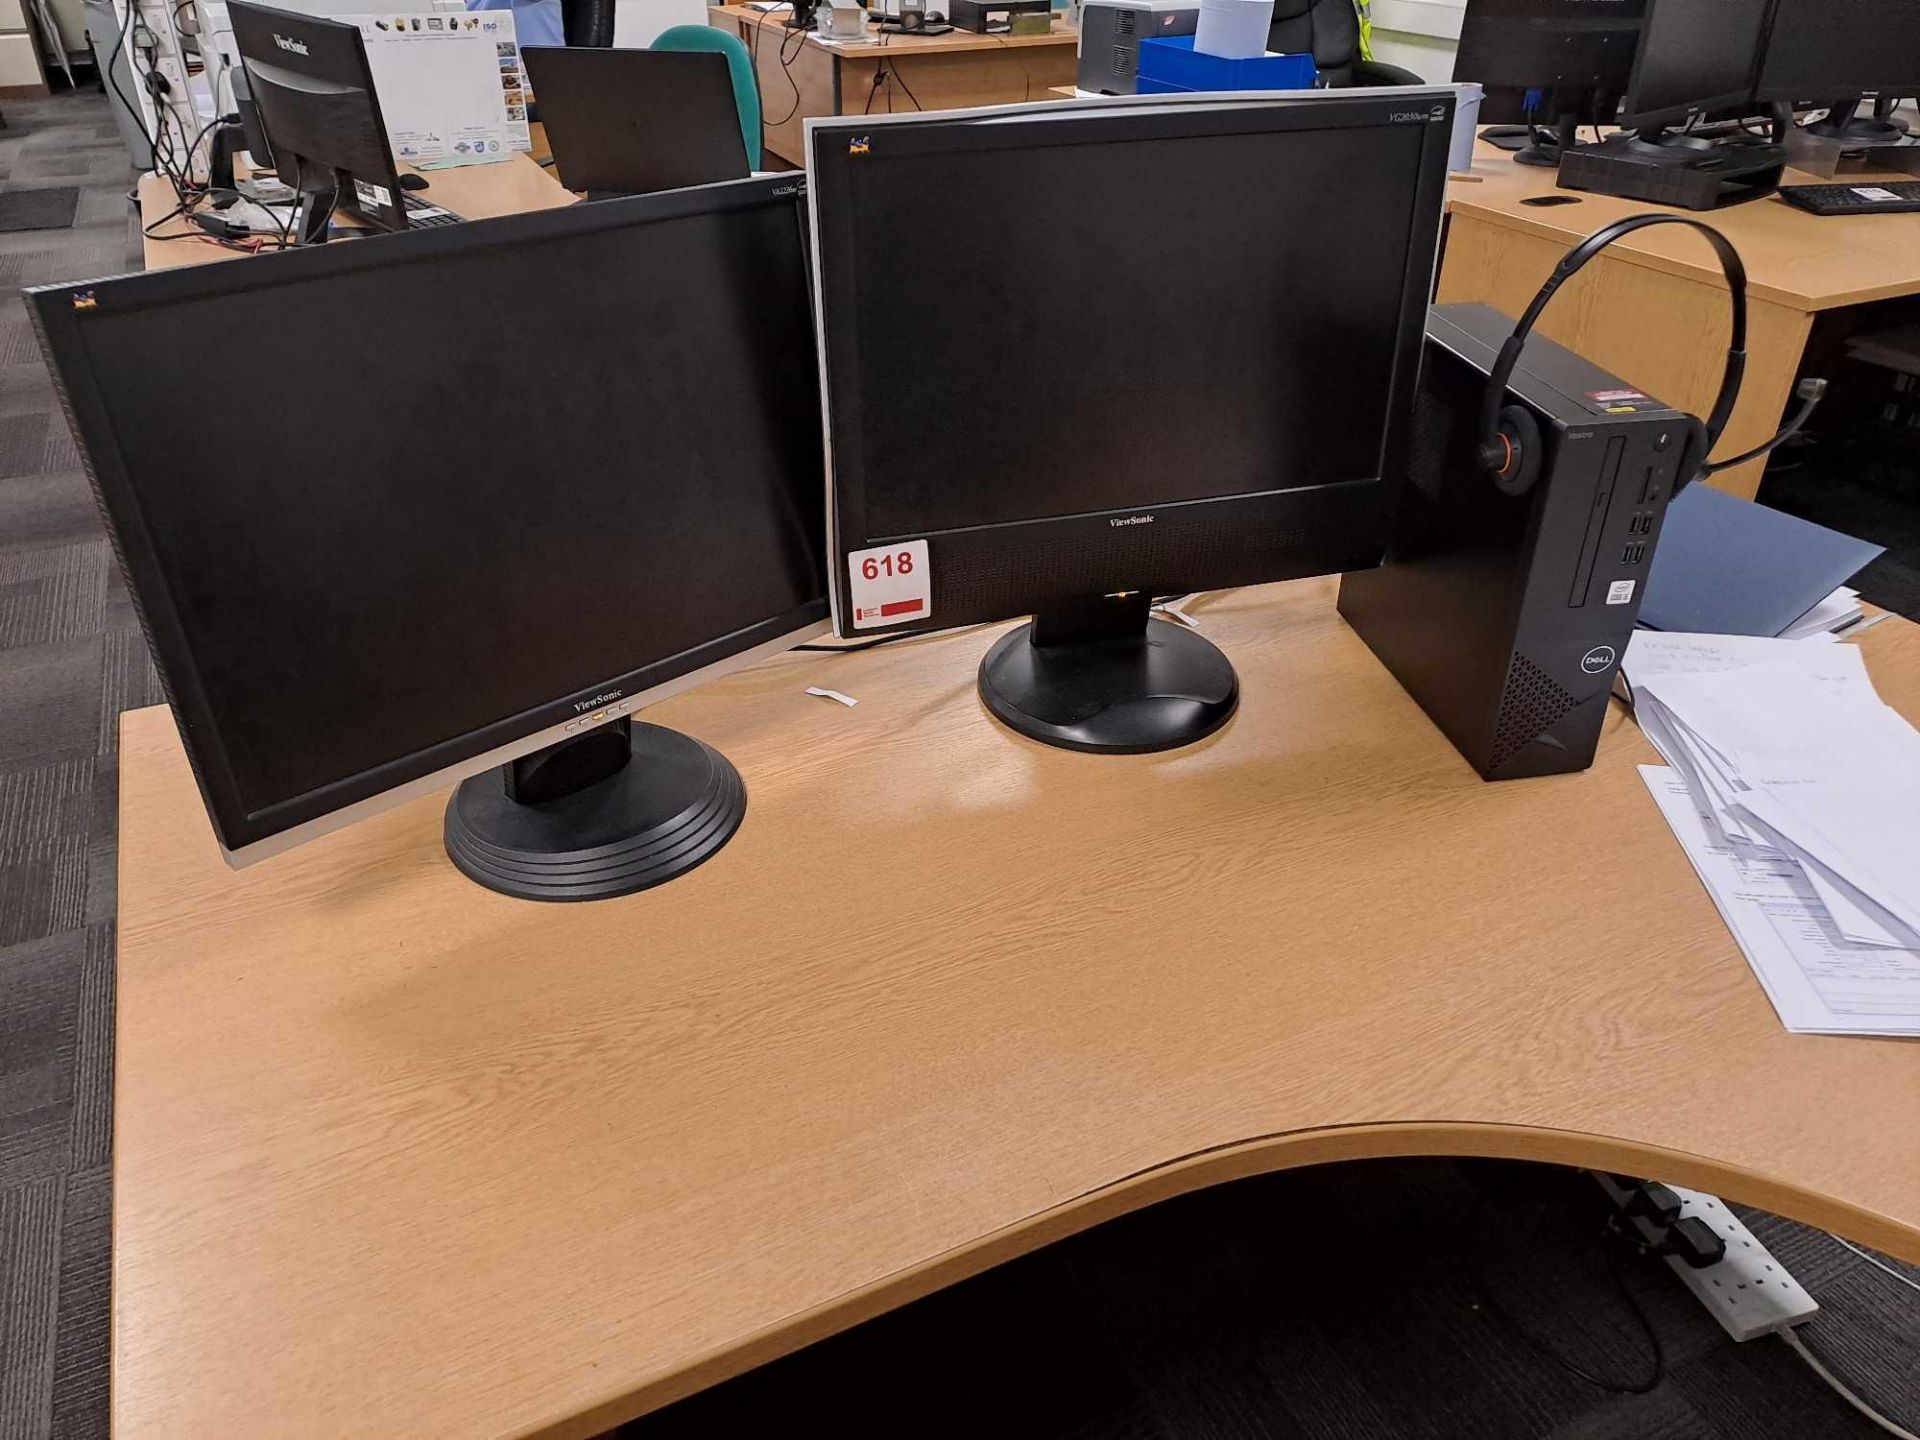 Two Viewsonic monitors, and Dell Vostro PC